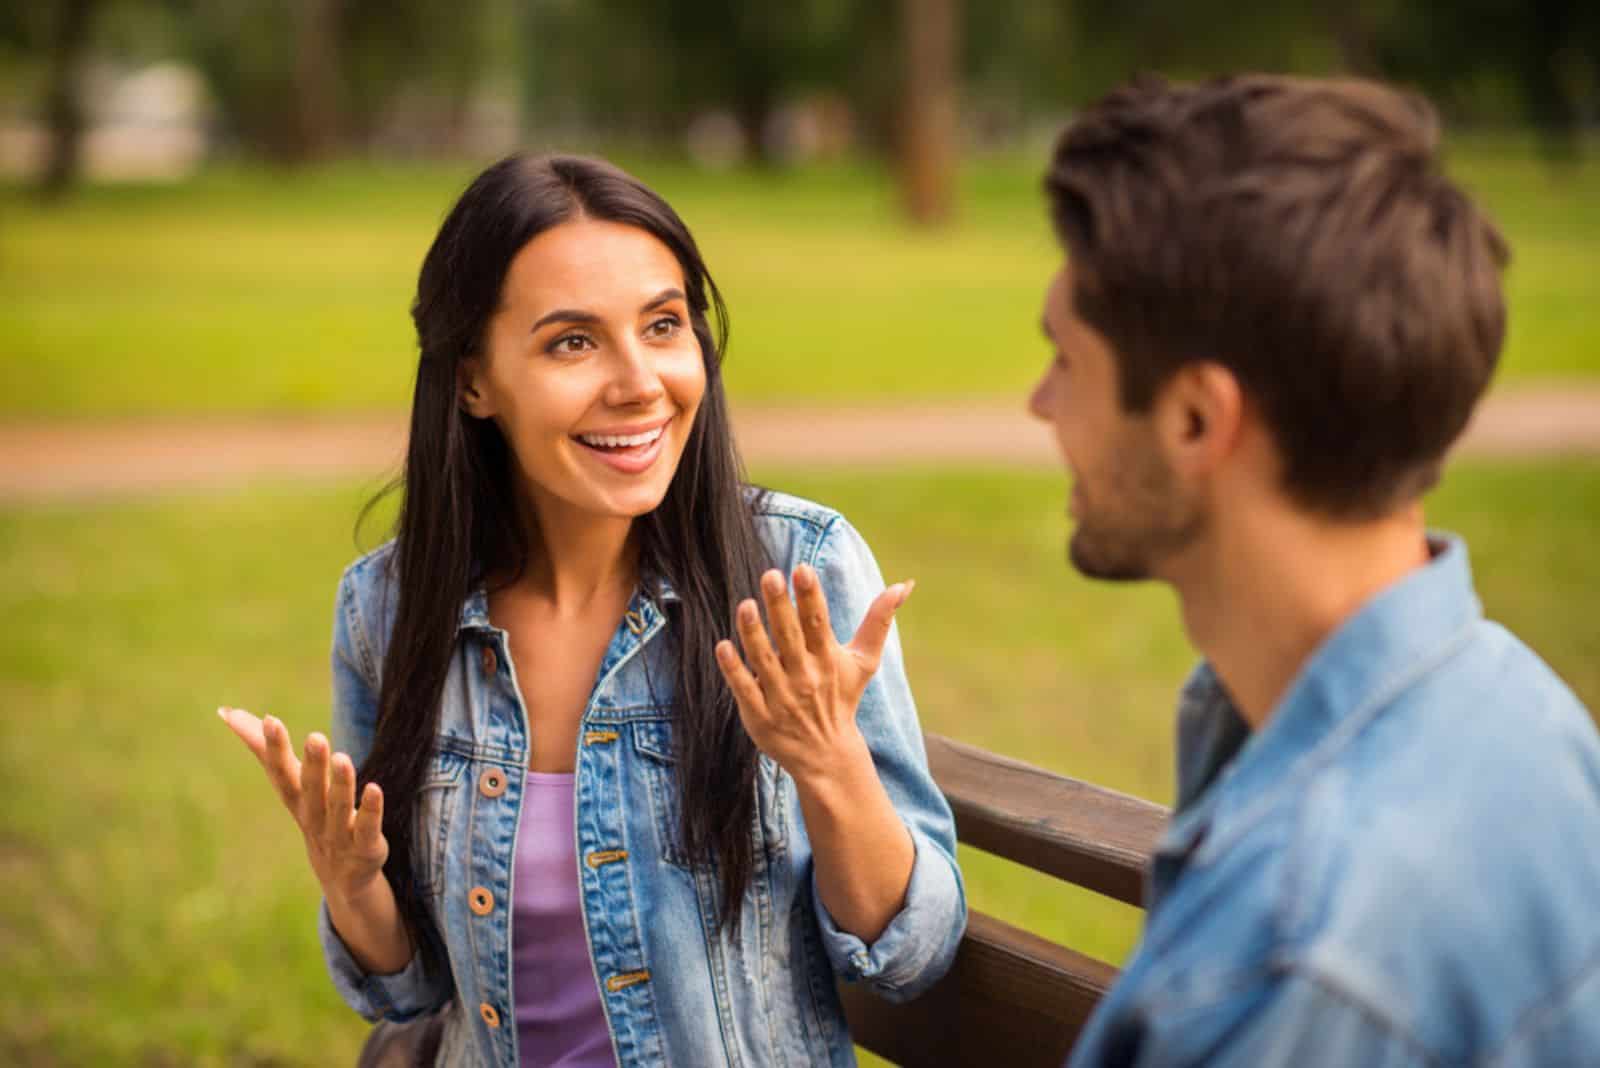 une fille souriante aux longs cheveux noirs parle à un homme sur un banc de parc